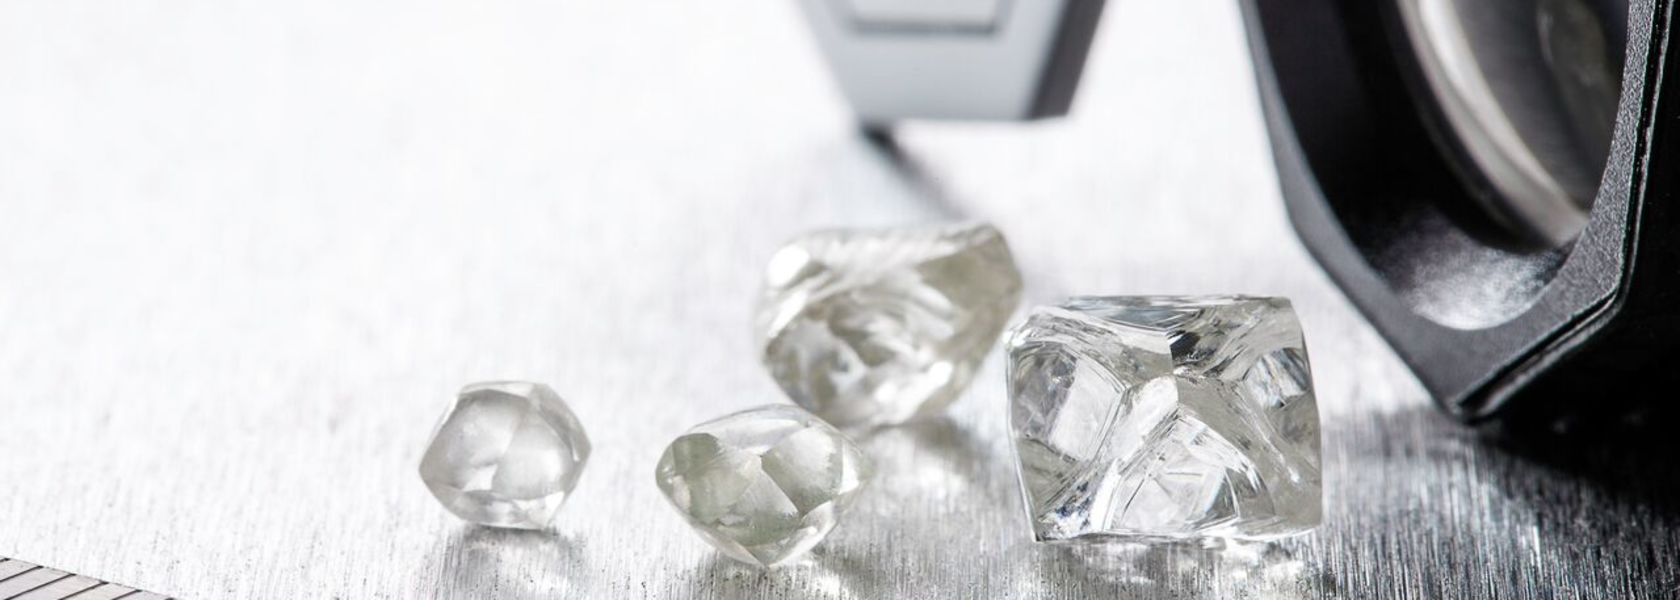 BlueRock Diamonds focuses on cost-cutting